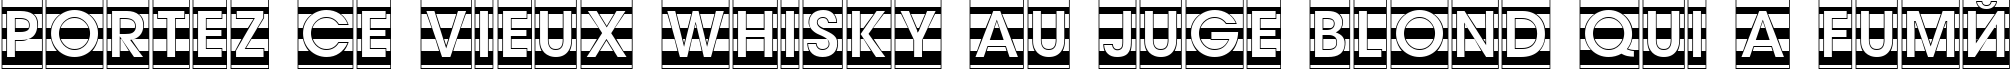 Пример написания шрифтом a_AvanteCmGrdStr Bold текста на французском